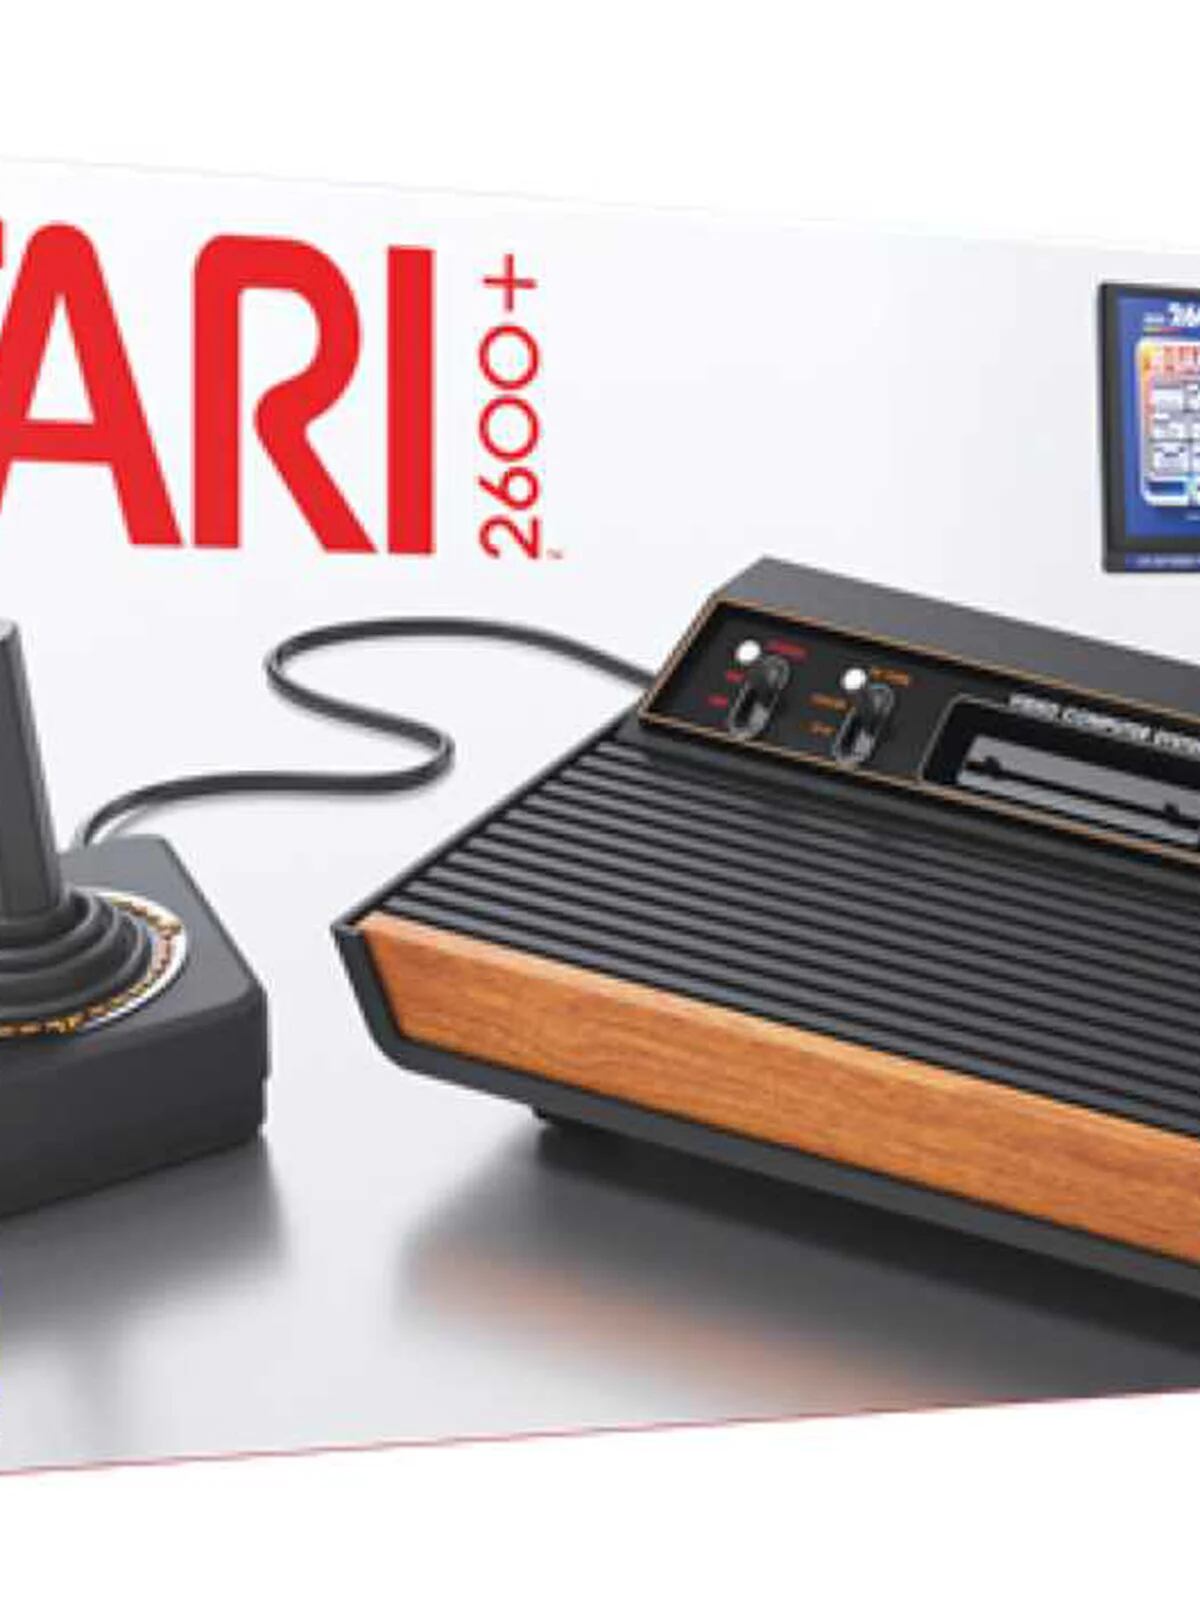 Revive toda la magia de los videojuegos retro con esta pequeña consola con  aspecto de Atari